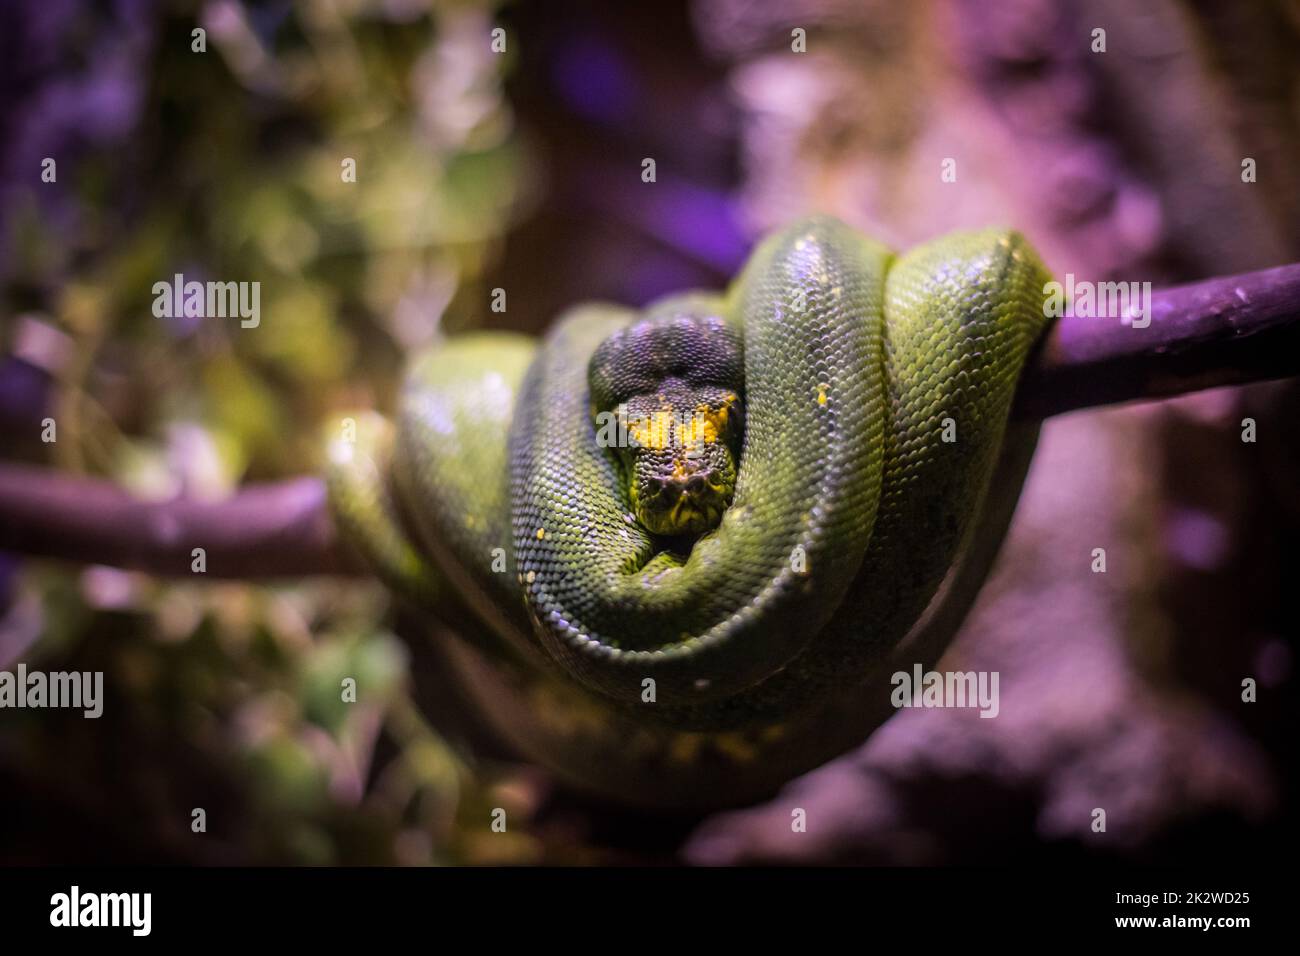 Green Boa snake in a tree Stock Photo